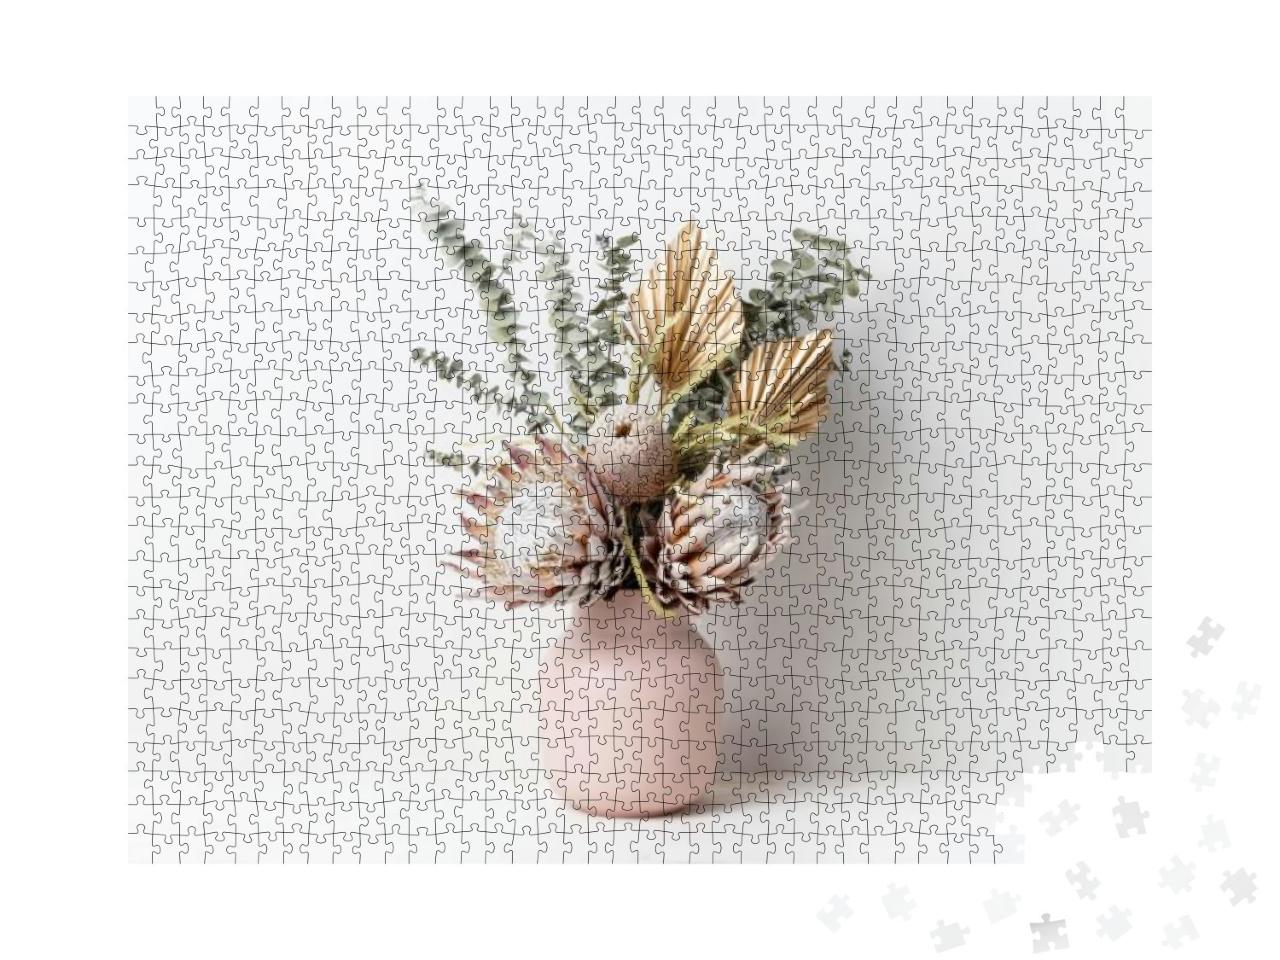 Puzzle 1000 Teile „Trockenblumenarrangement in einer rosa Vase“